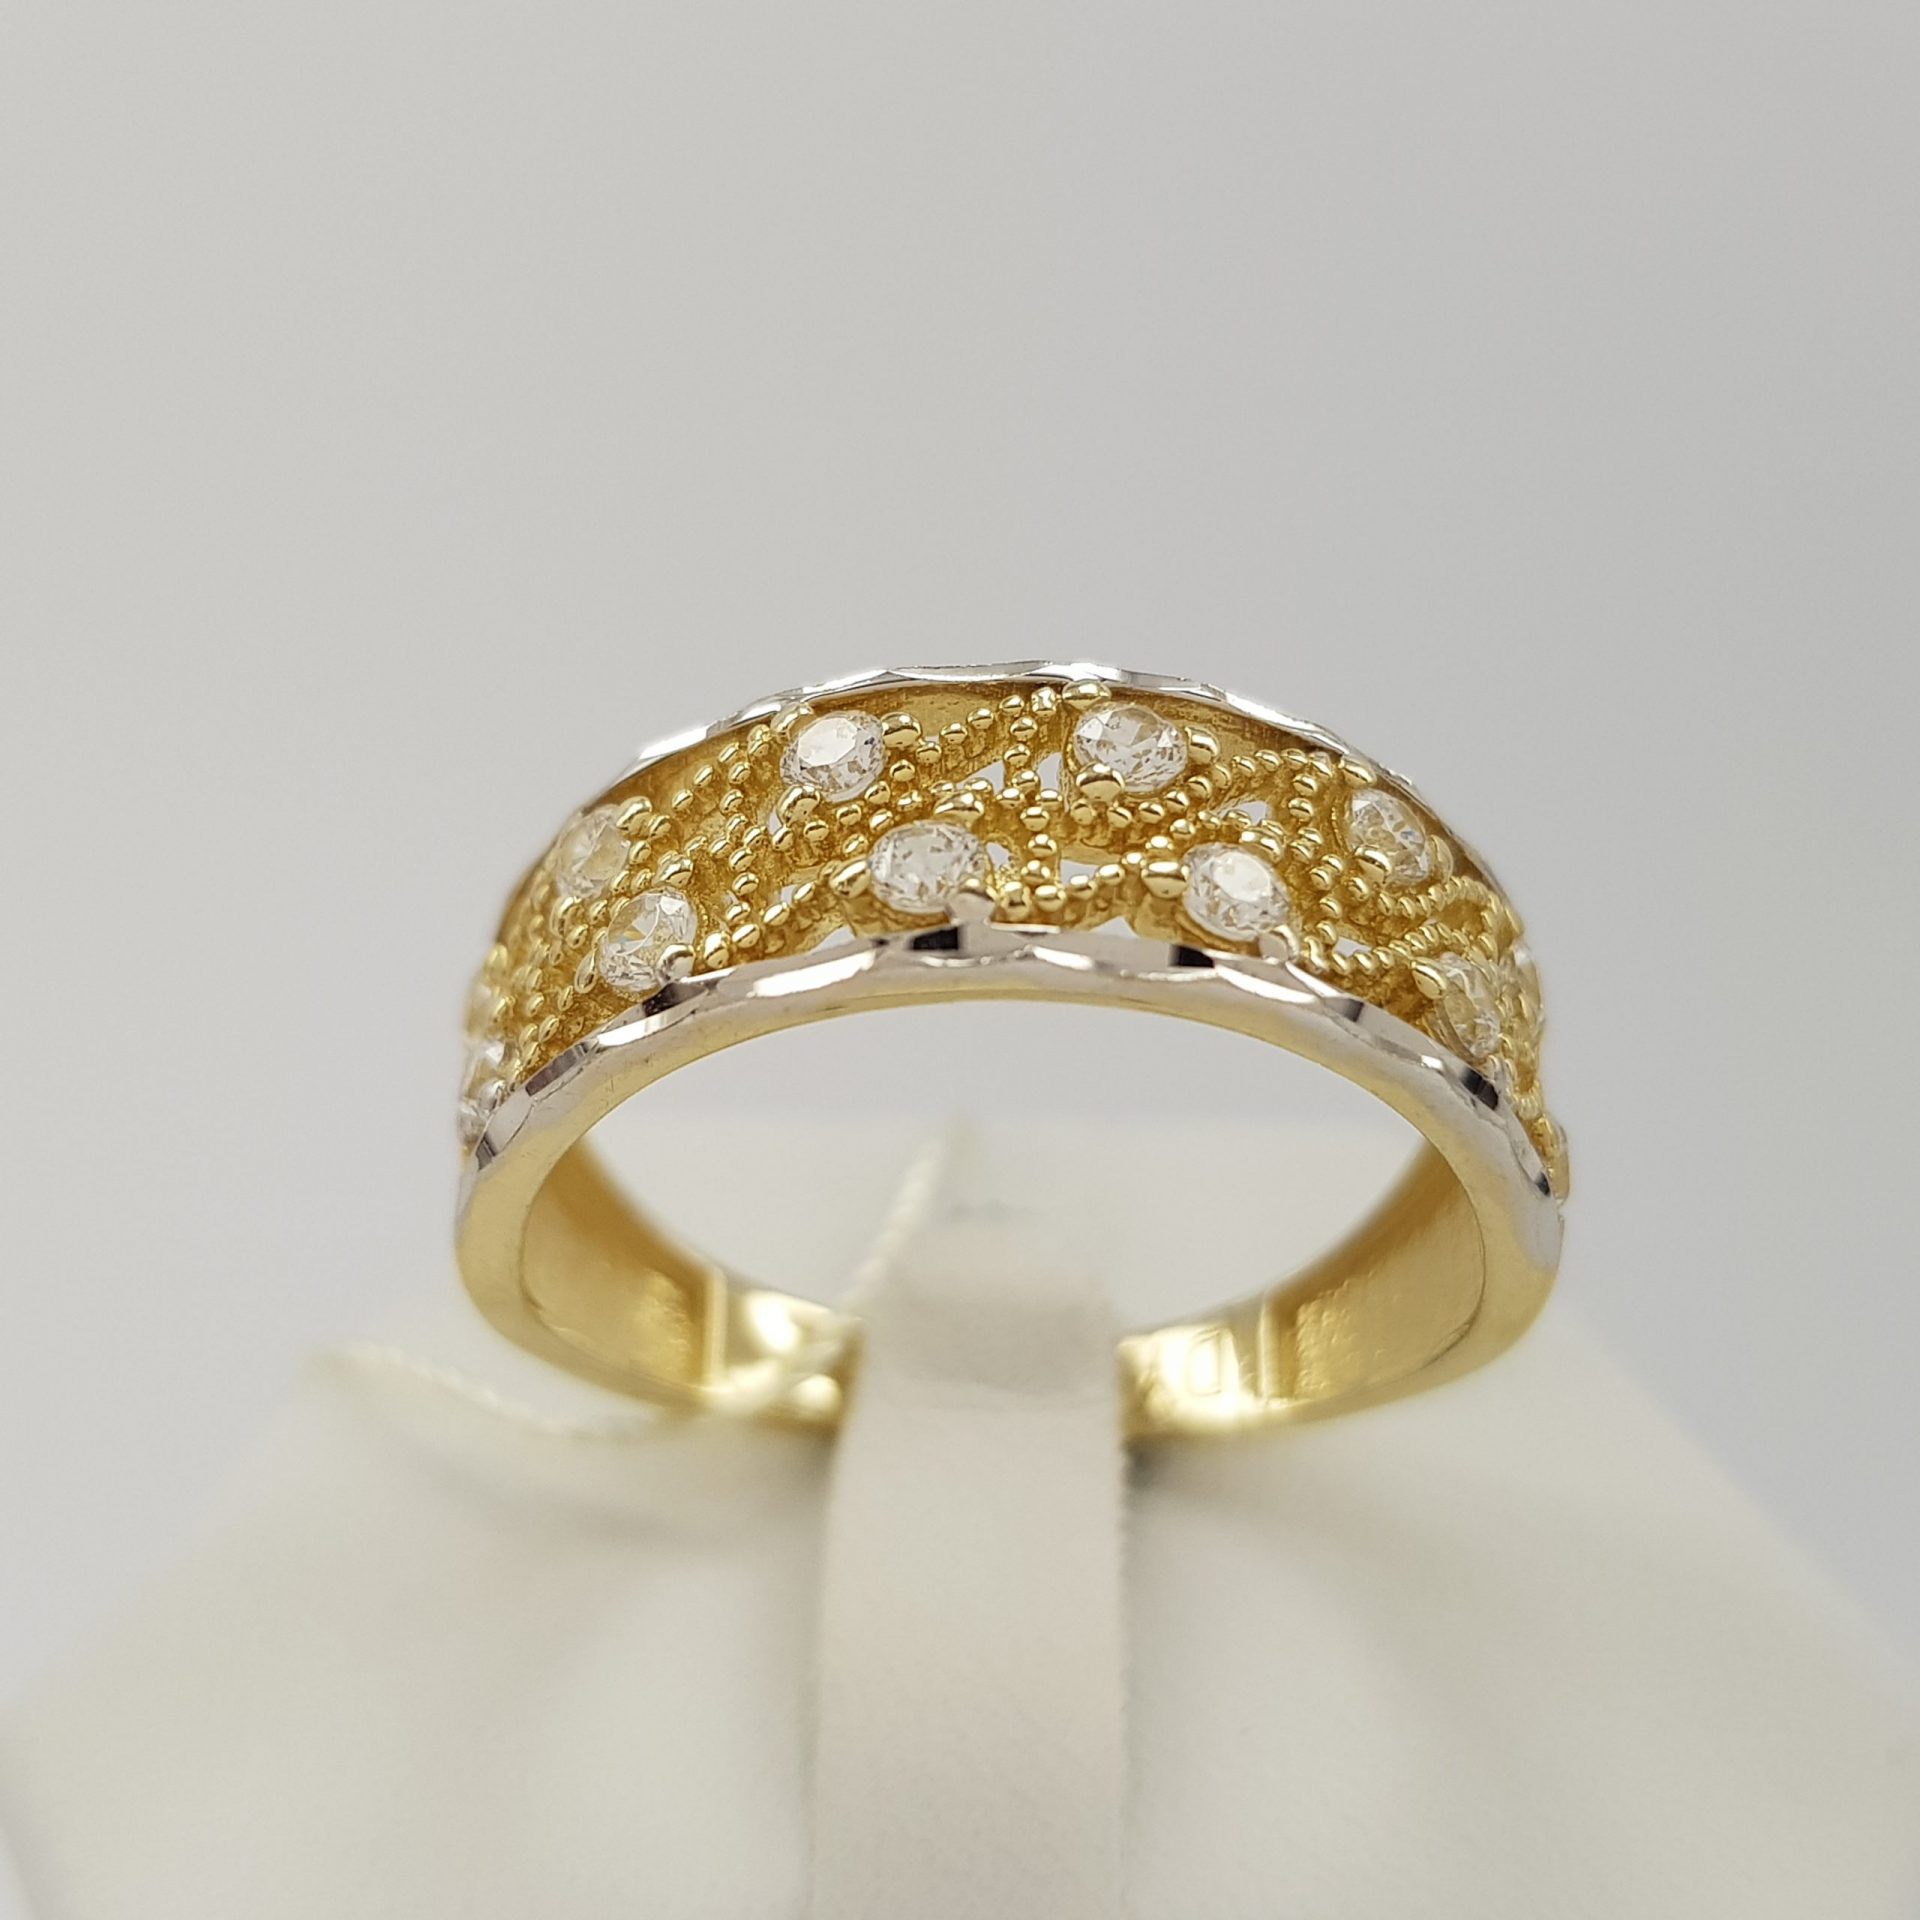 Wyjątkowy, ażurowy pierścionek w złocie dwukolorowym